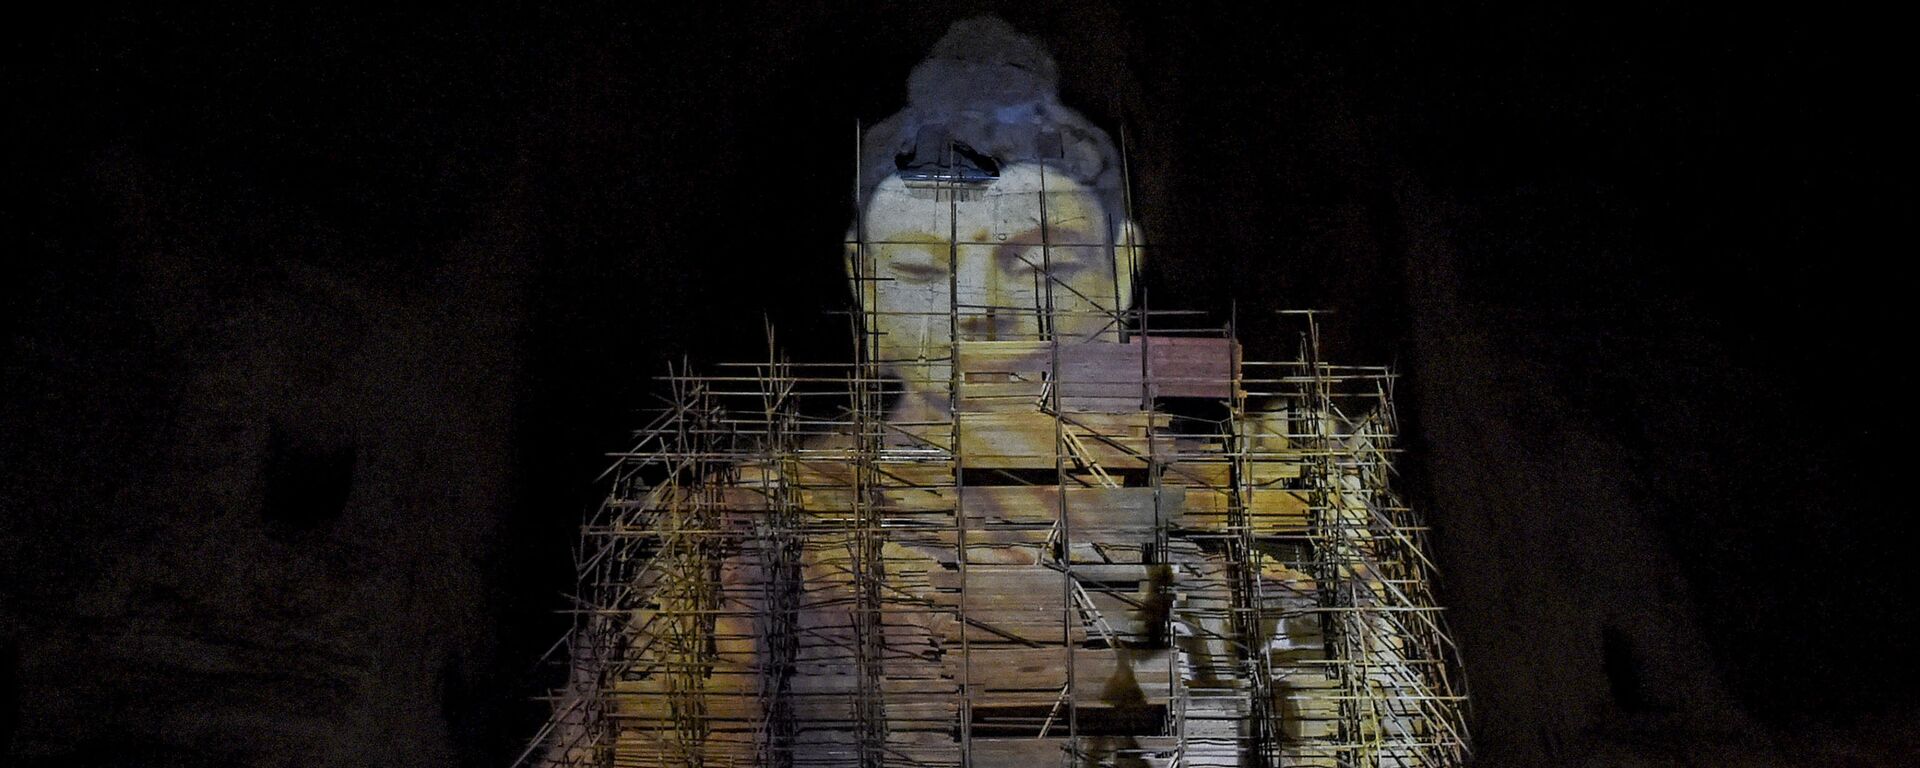 Sanal olarak üç boyutlu yeniden canlandıran 55 metre yüksekliğindeki Buda heykeli, Bamyan, Afganistan - Sputnik Türkiye, 1920, 10.03.2021